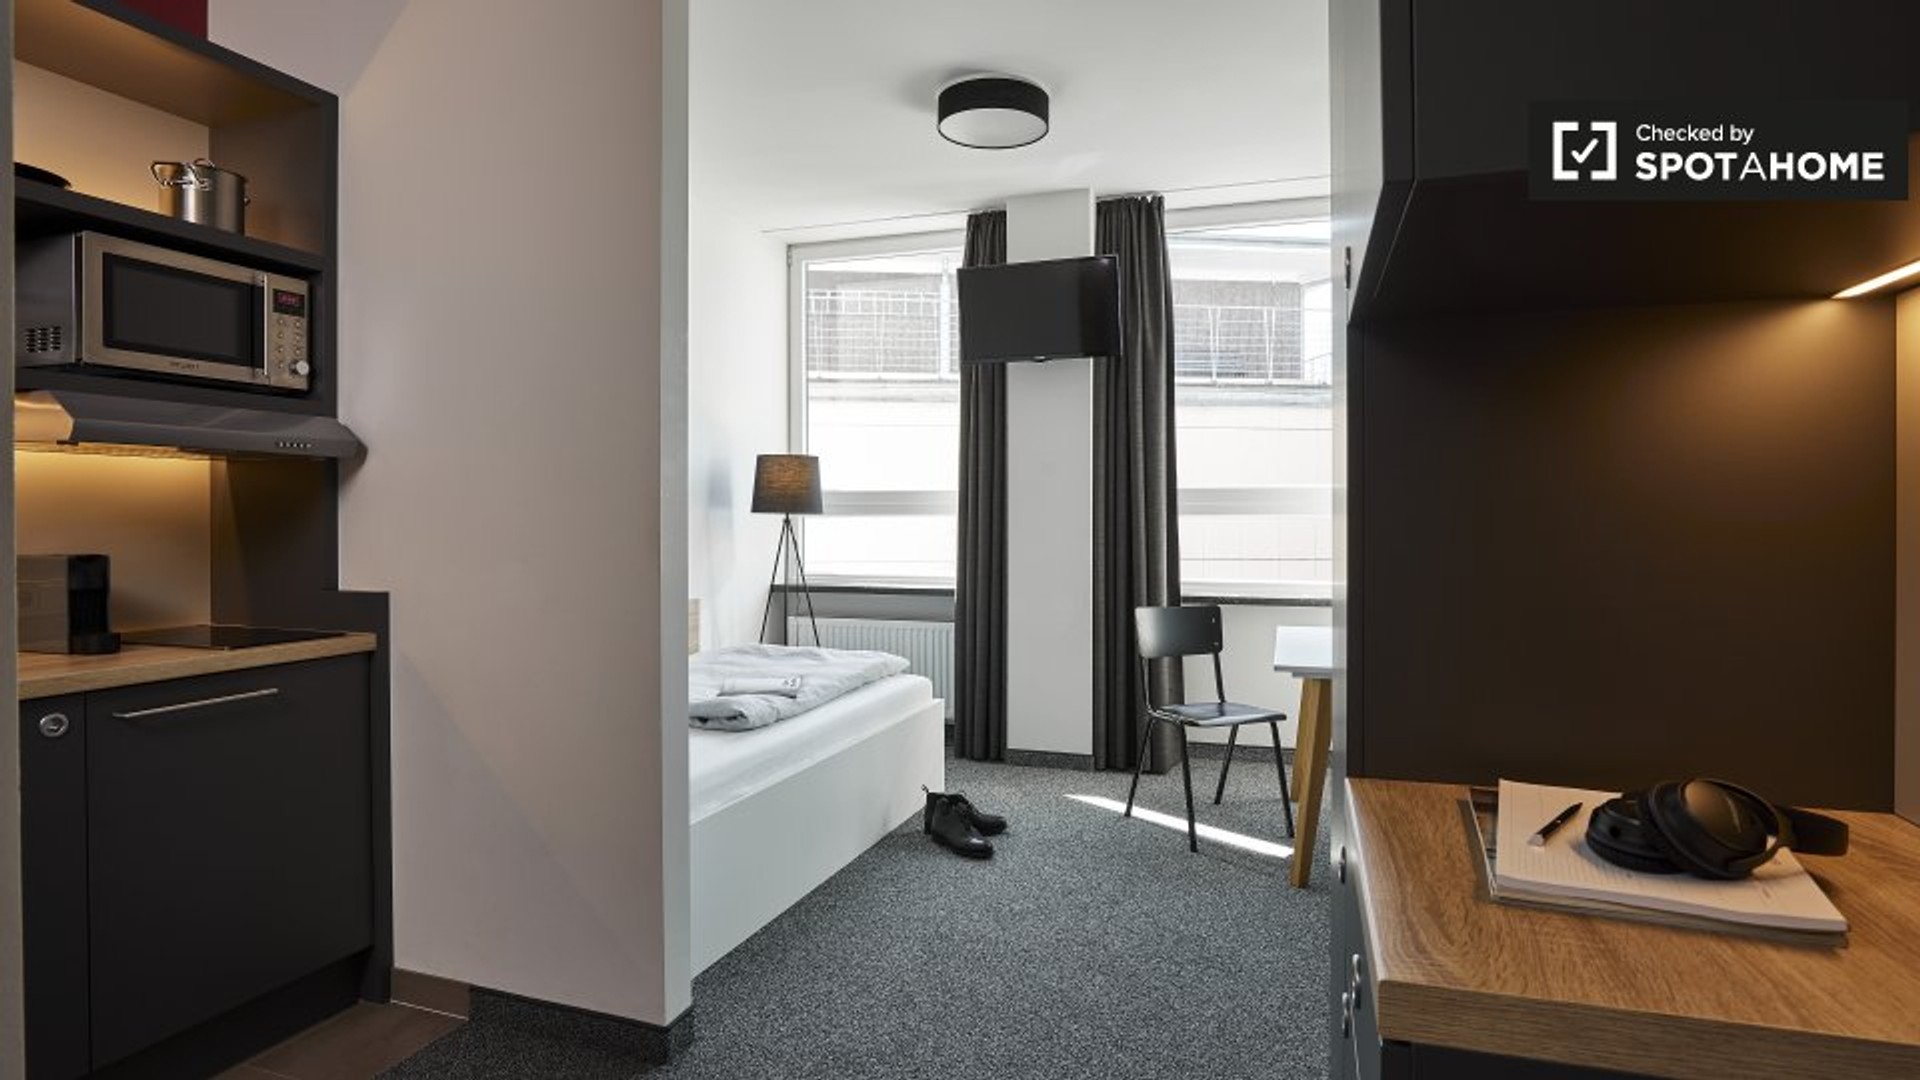 Appartement entièrement meublé à Hambourg